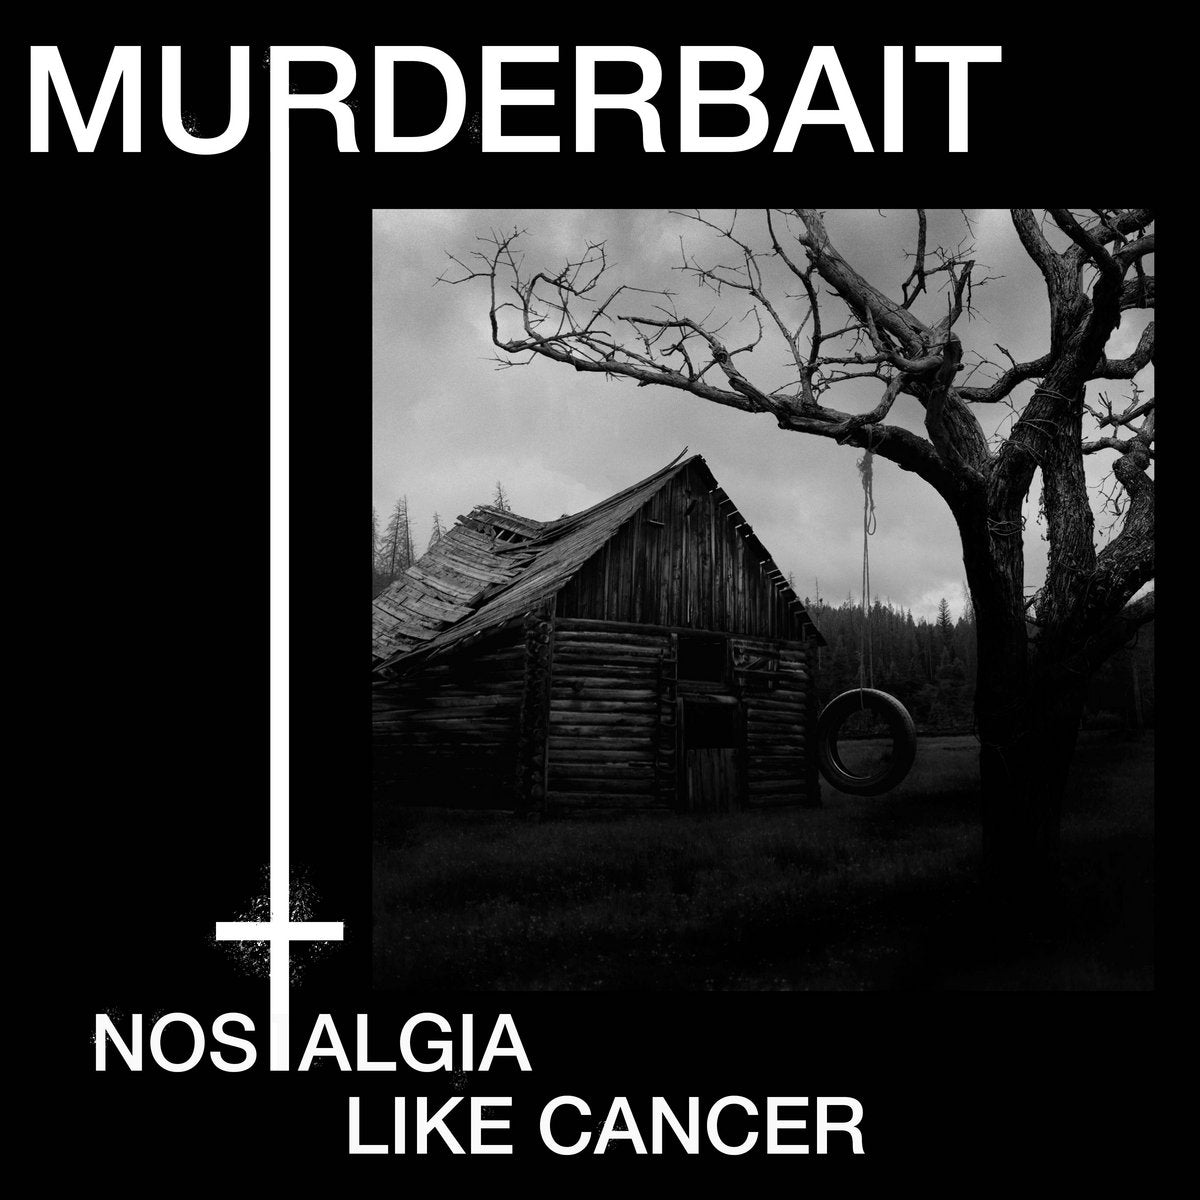 Murderbait - Nostalgia like Cancer CD